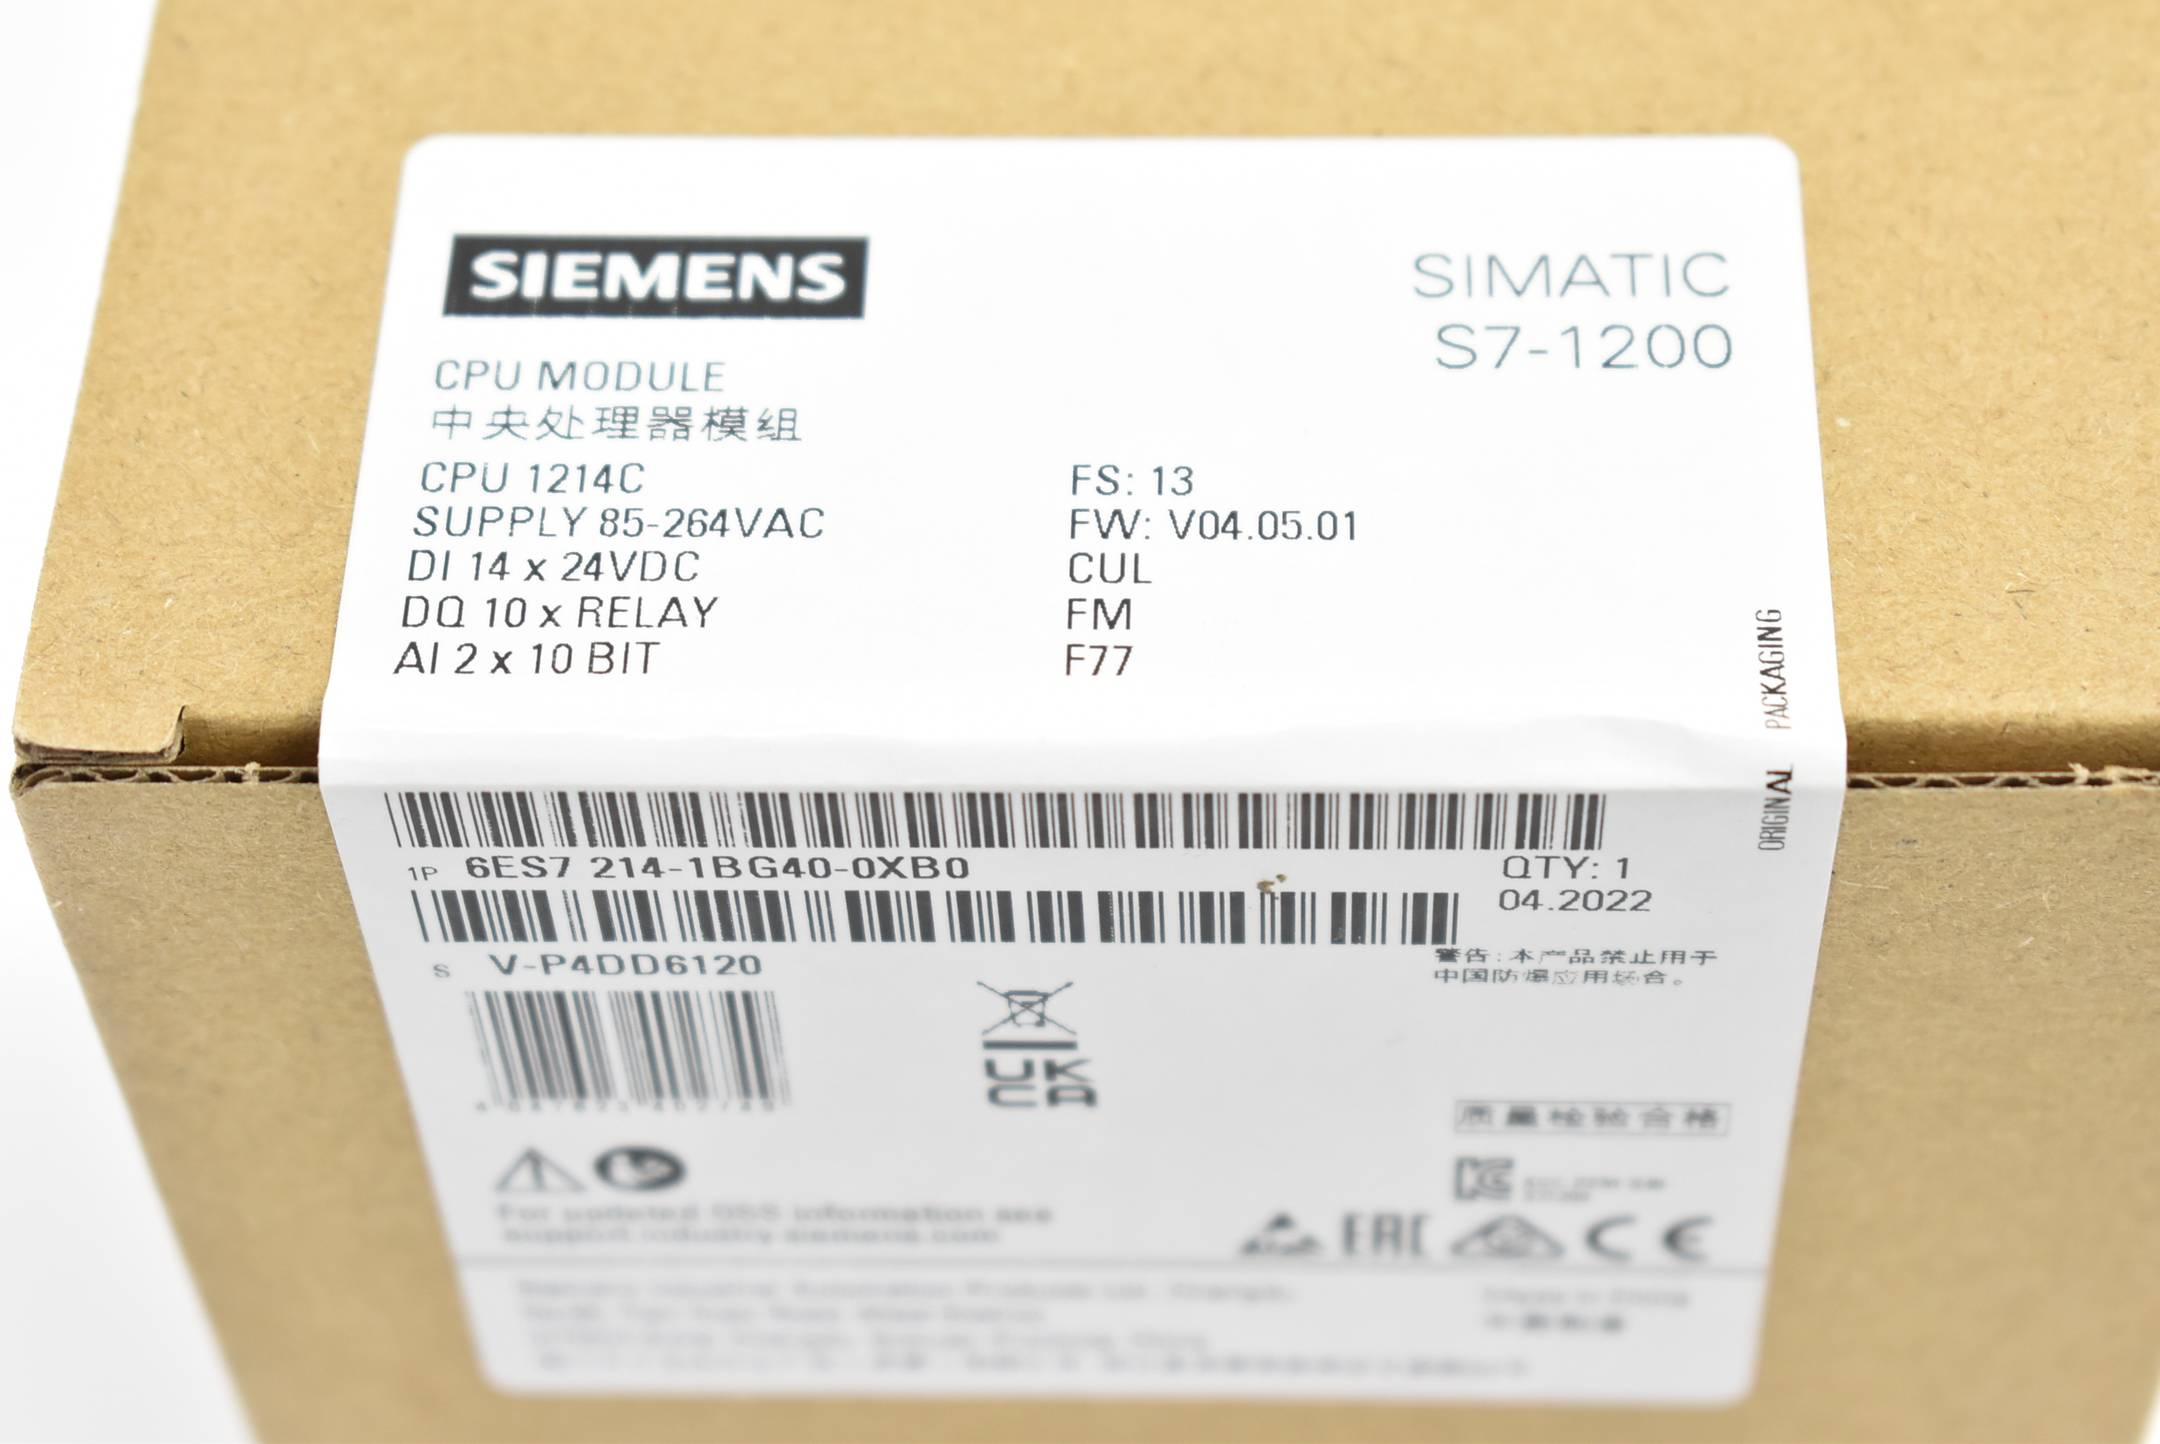 Siemens simatic S7-1200 CPU1214C 6ES7214-1BG40-0XB0 ( 6ES7 214-1BG40-0XB0 ) E13